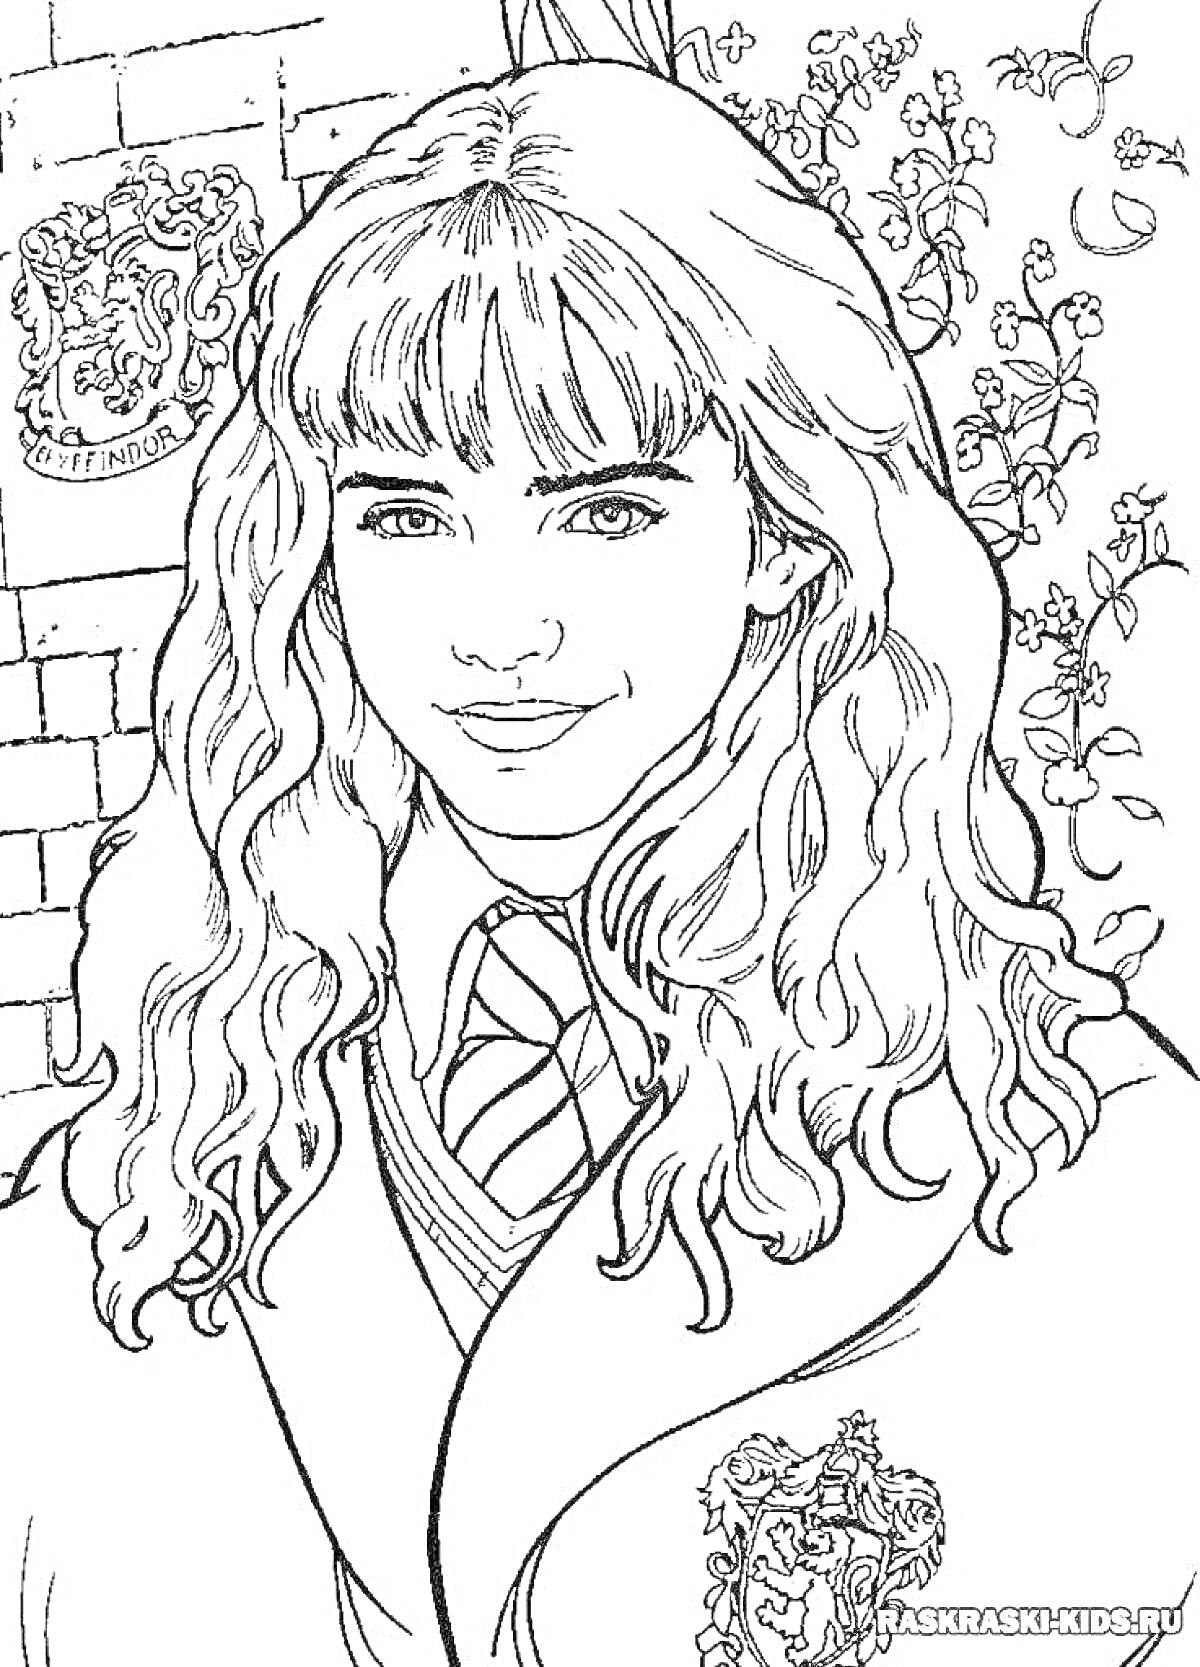 Раскраска Девочка с длинными волосами в школьной форме с узором льва на фоне стены и растений